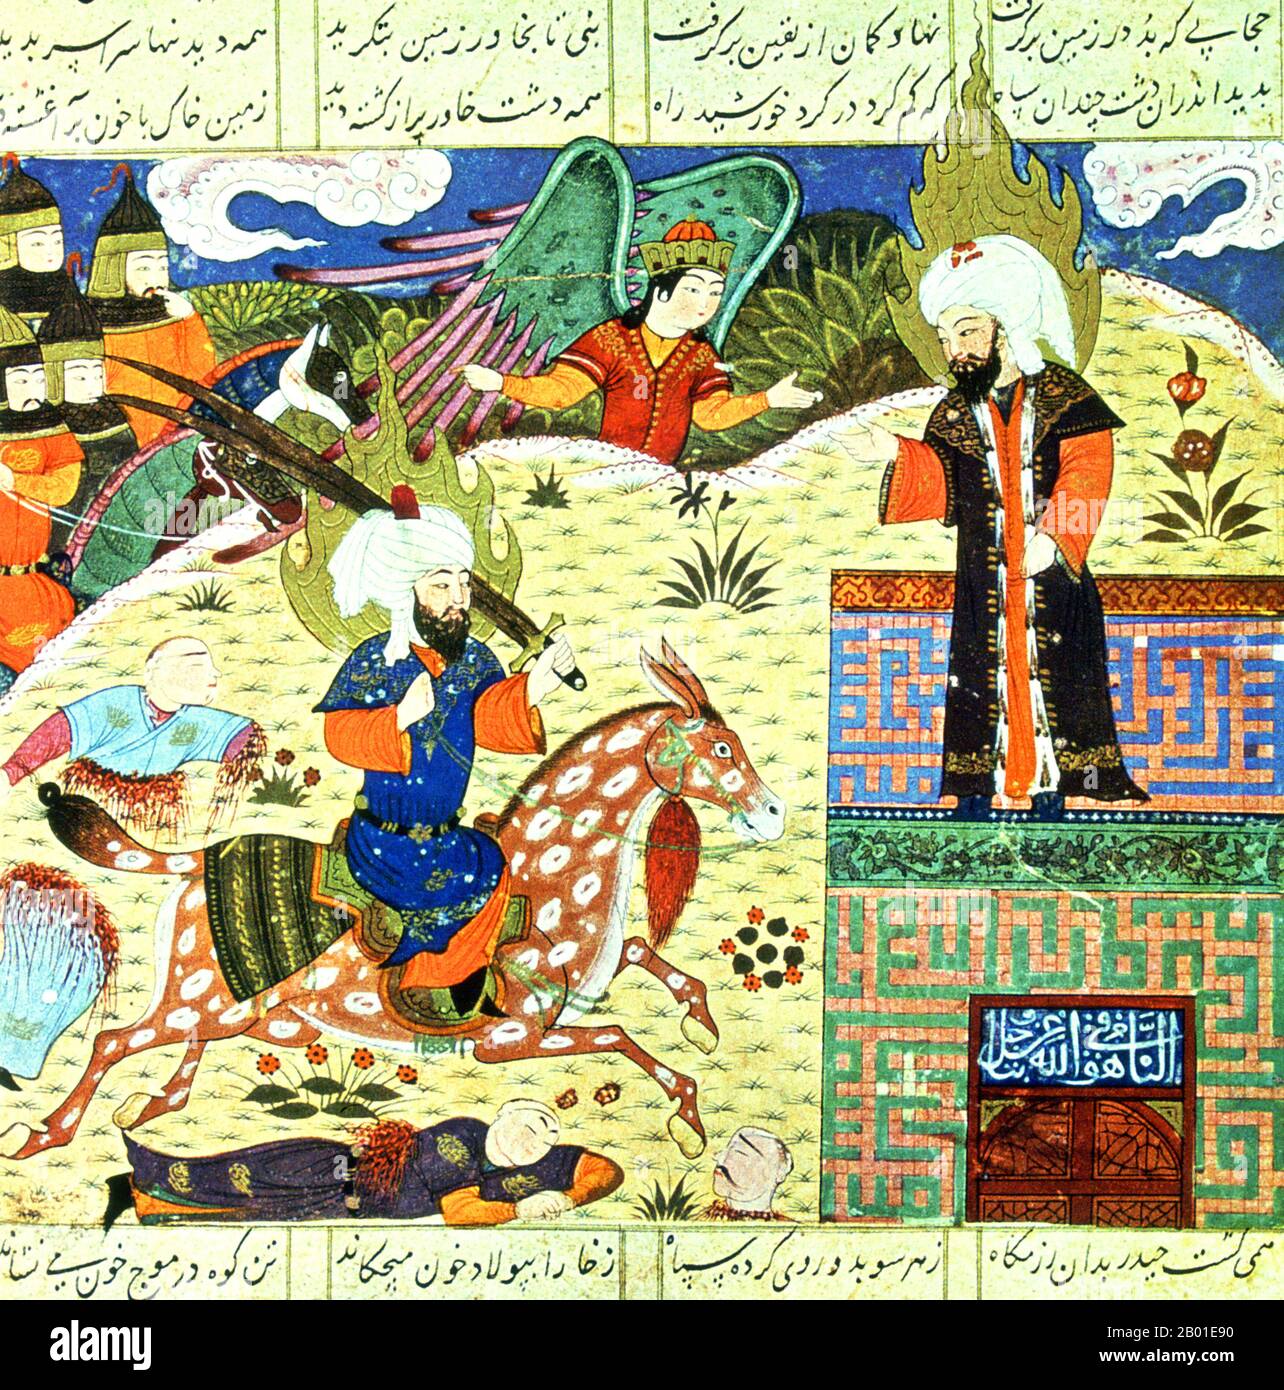 Irán/Persia: Jibril - el Ángel Gabriel - indica la calidad de Ali - a caballo, blandiendo la espada bifurcada Zhu al-Fiqar - al Profeta Muhammad. Ilustración del Khawar Nama de Muhammad ibn Husam al-Din, c. 1450-1475. Alī ibn Abī Ṭālib fue el primo y yerno del profeta islámico Muhammad, gobernó el Califato Islámico de 656 a 661, y fue el primer hombre convertido al Islam. Los musulmanes sunitas consideran a Ali el cuarto y último de los Rashidun (califas correctamente guiados), mientras que los musulmanes chiíes consideran a Ali como el primer imán. Foto de stock